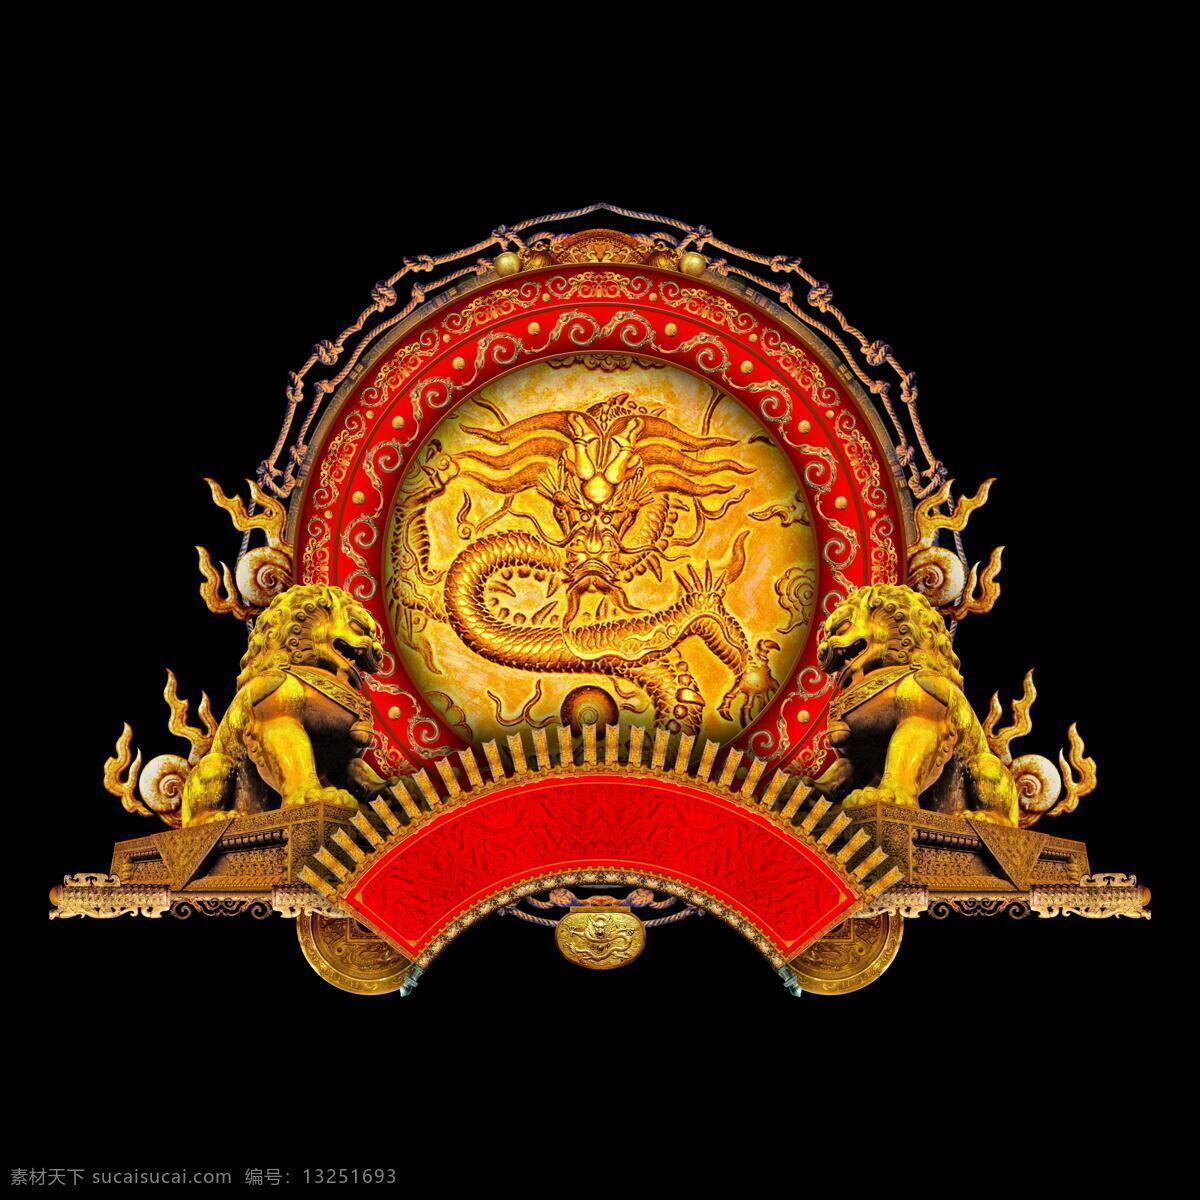 大气 古典 背景 龙狮 纹 边框 传统 底纹 皇家 龙 中国风格 尊贵 底纹边框